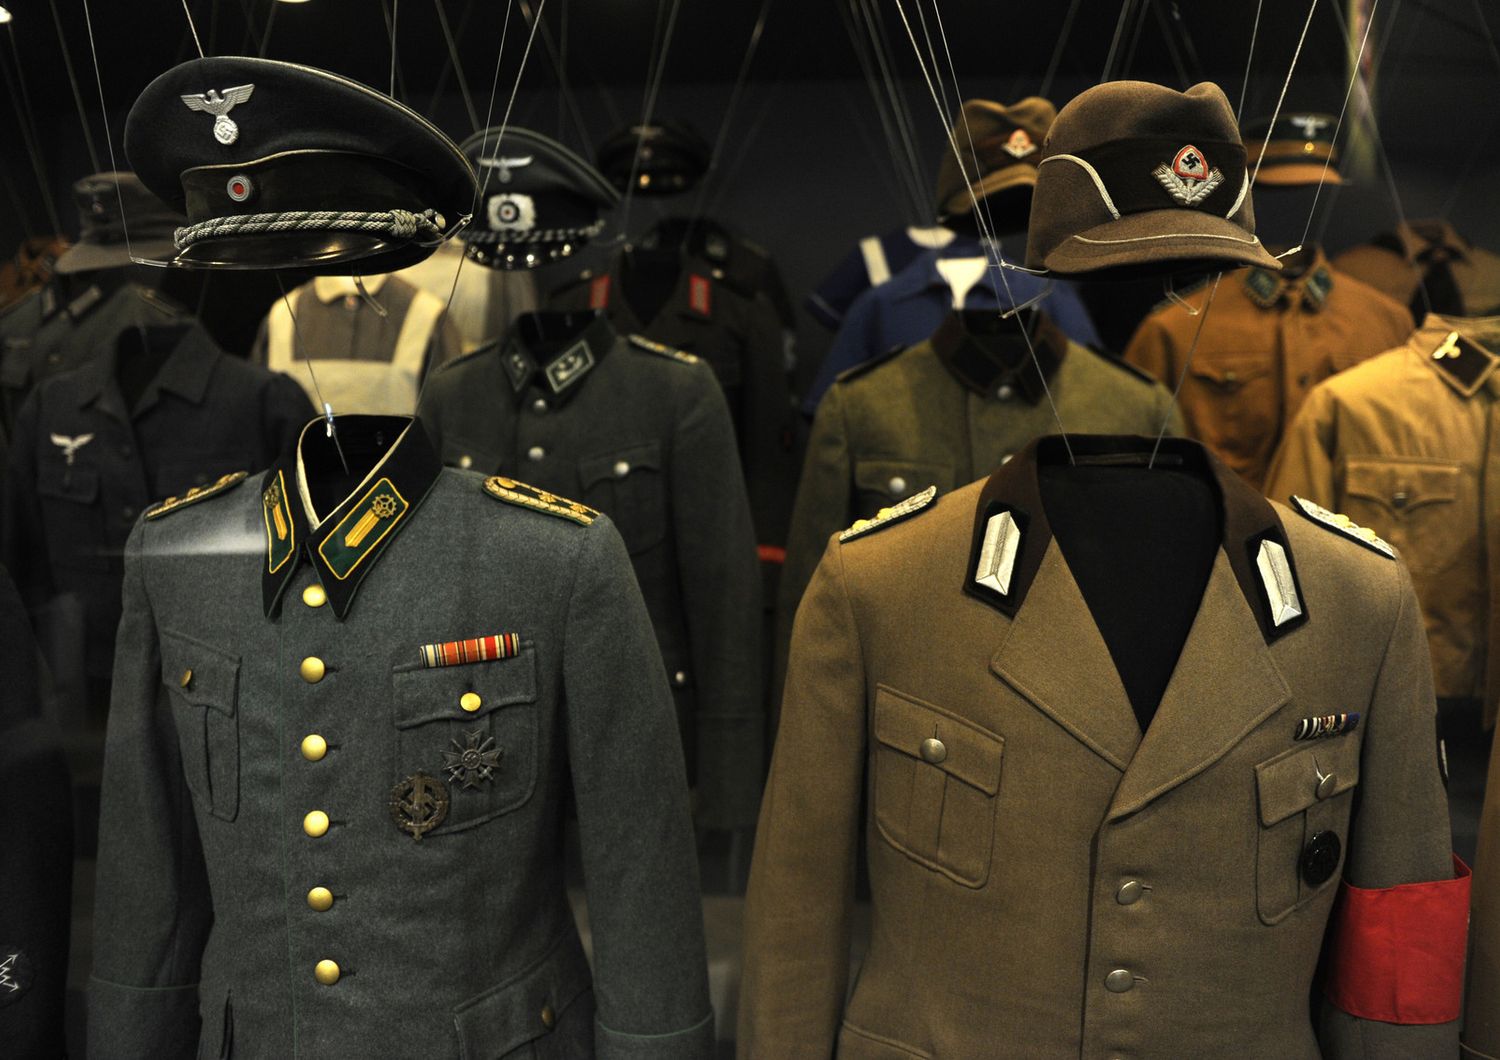 Uniformi naziste in esposizione